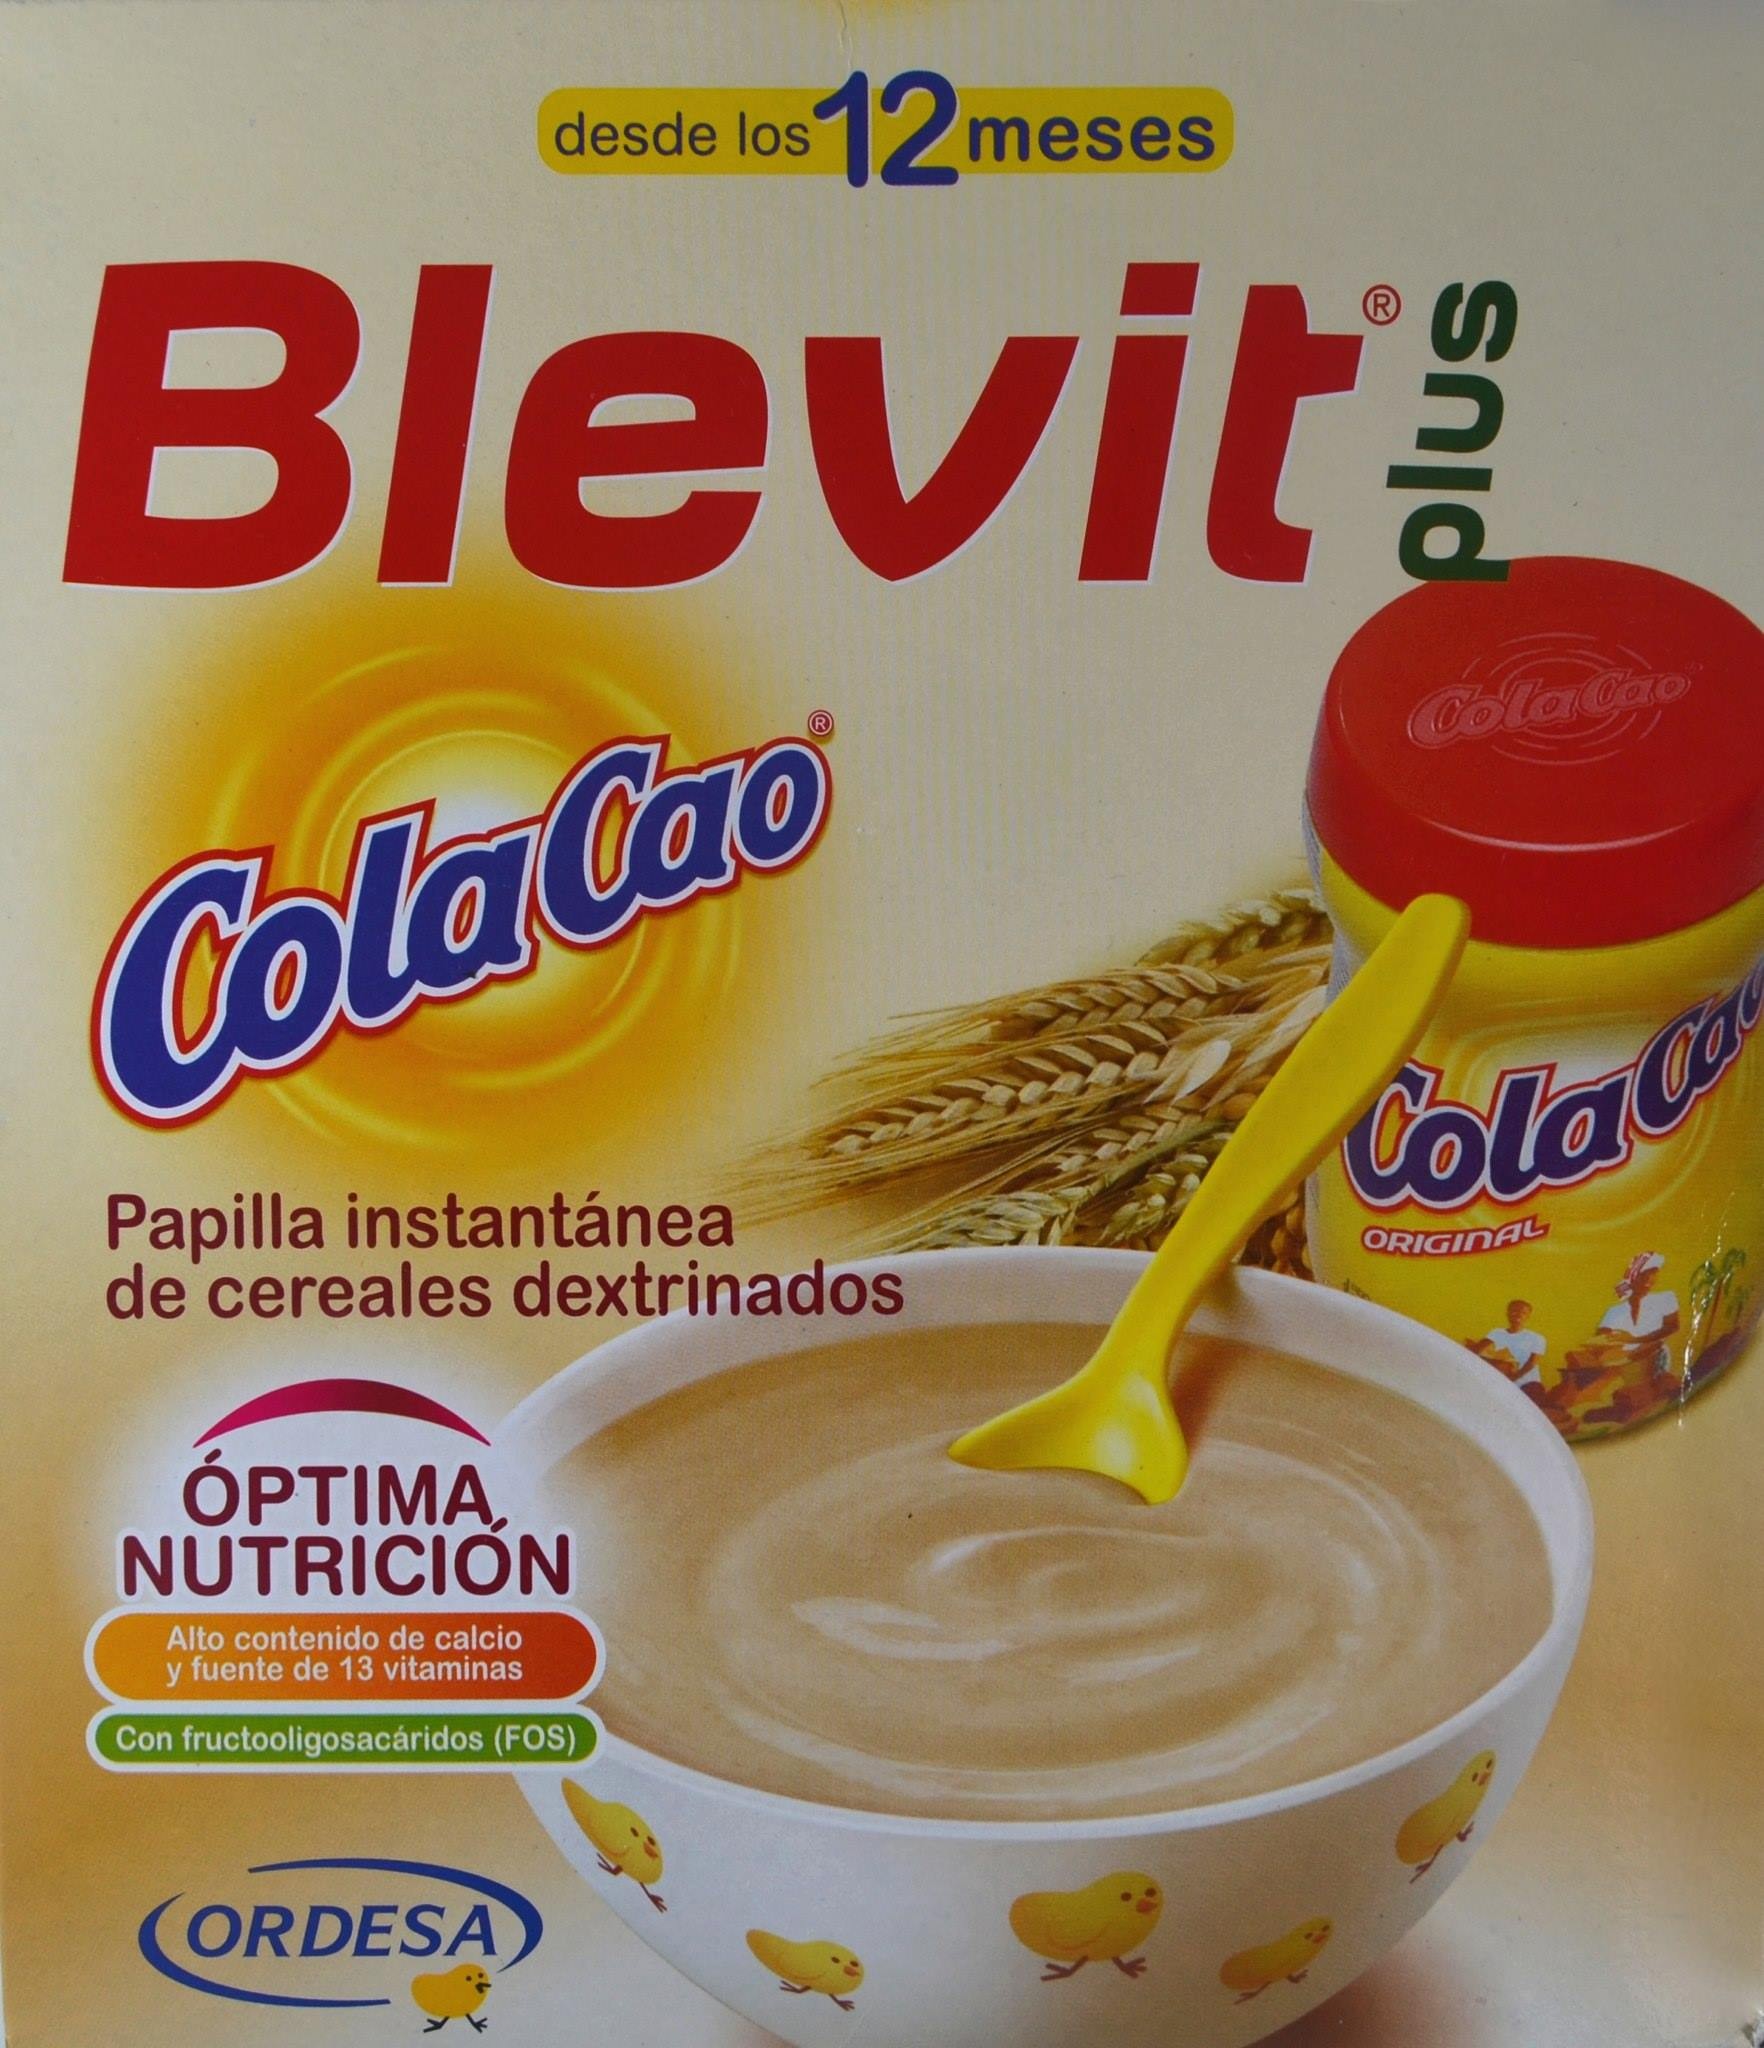 Ordesa Blevit Plus Bibe 8 Cereales y Colacao Polvo 600g